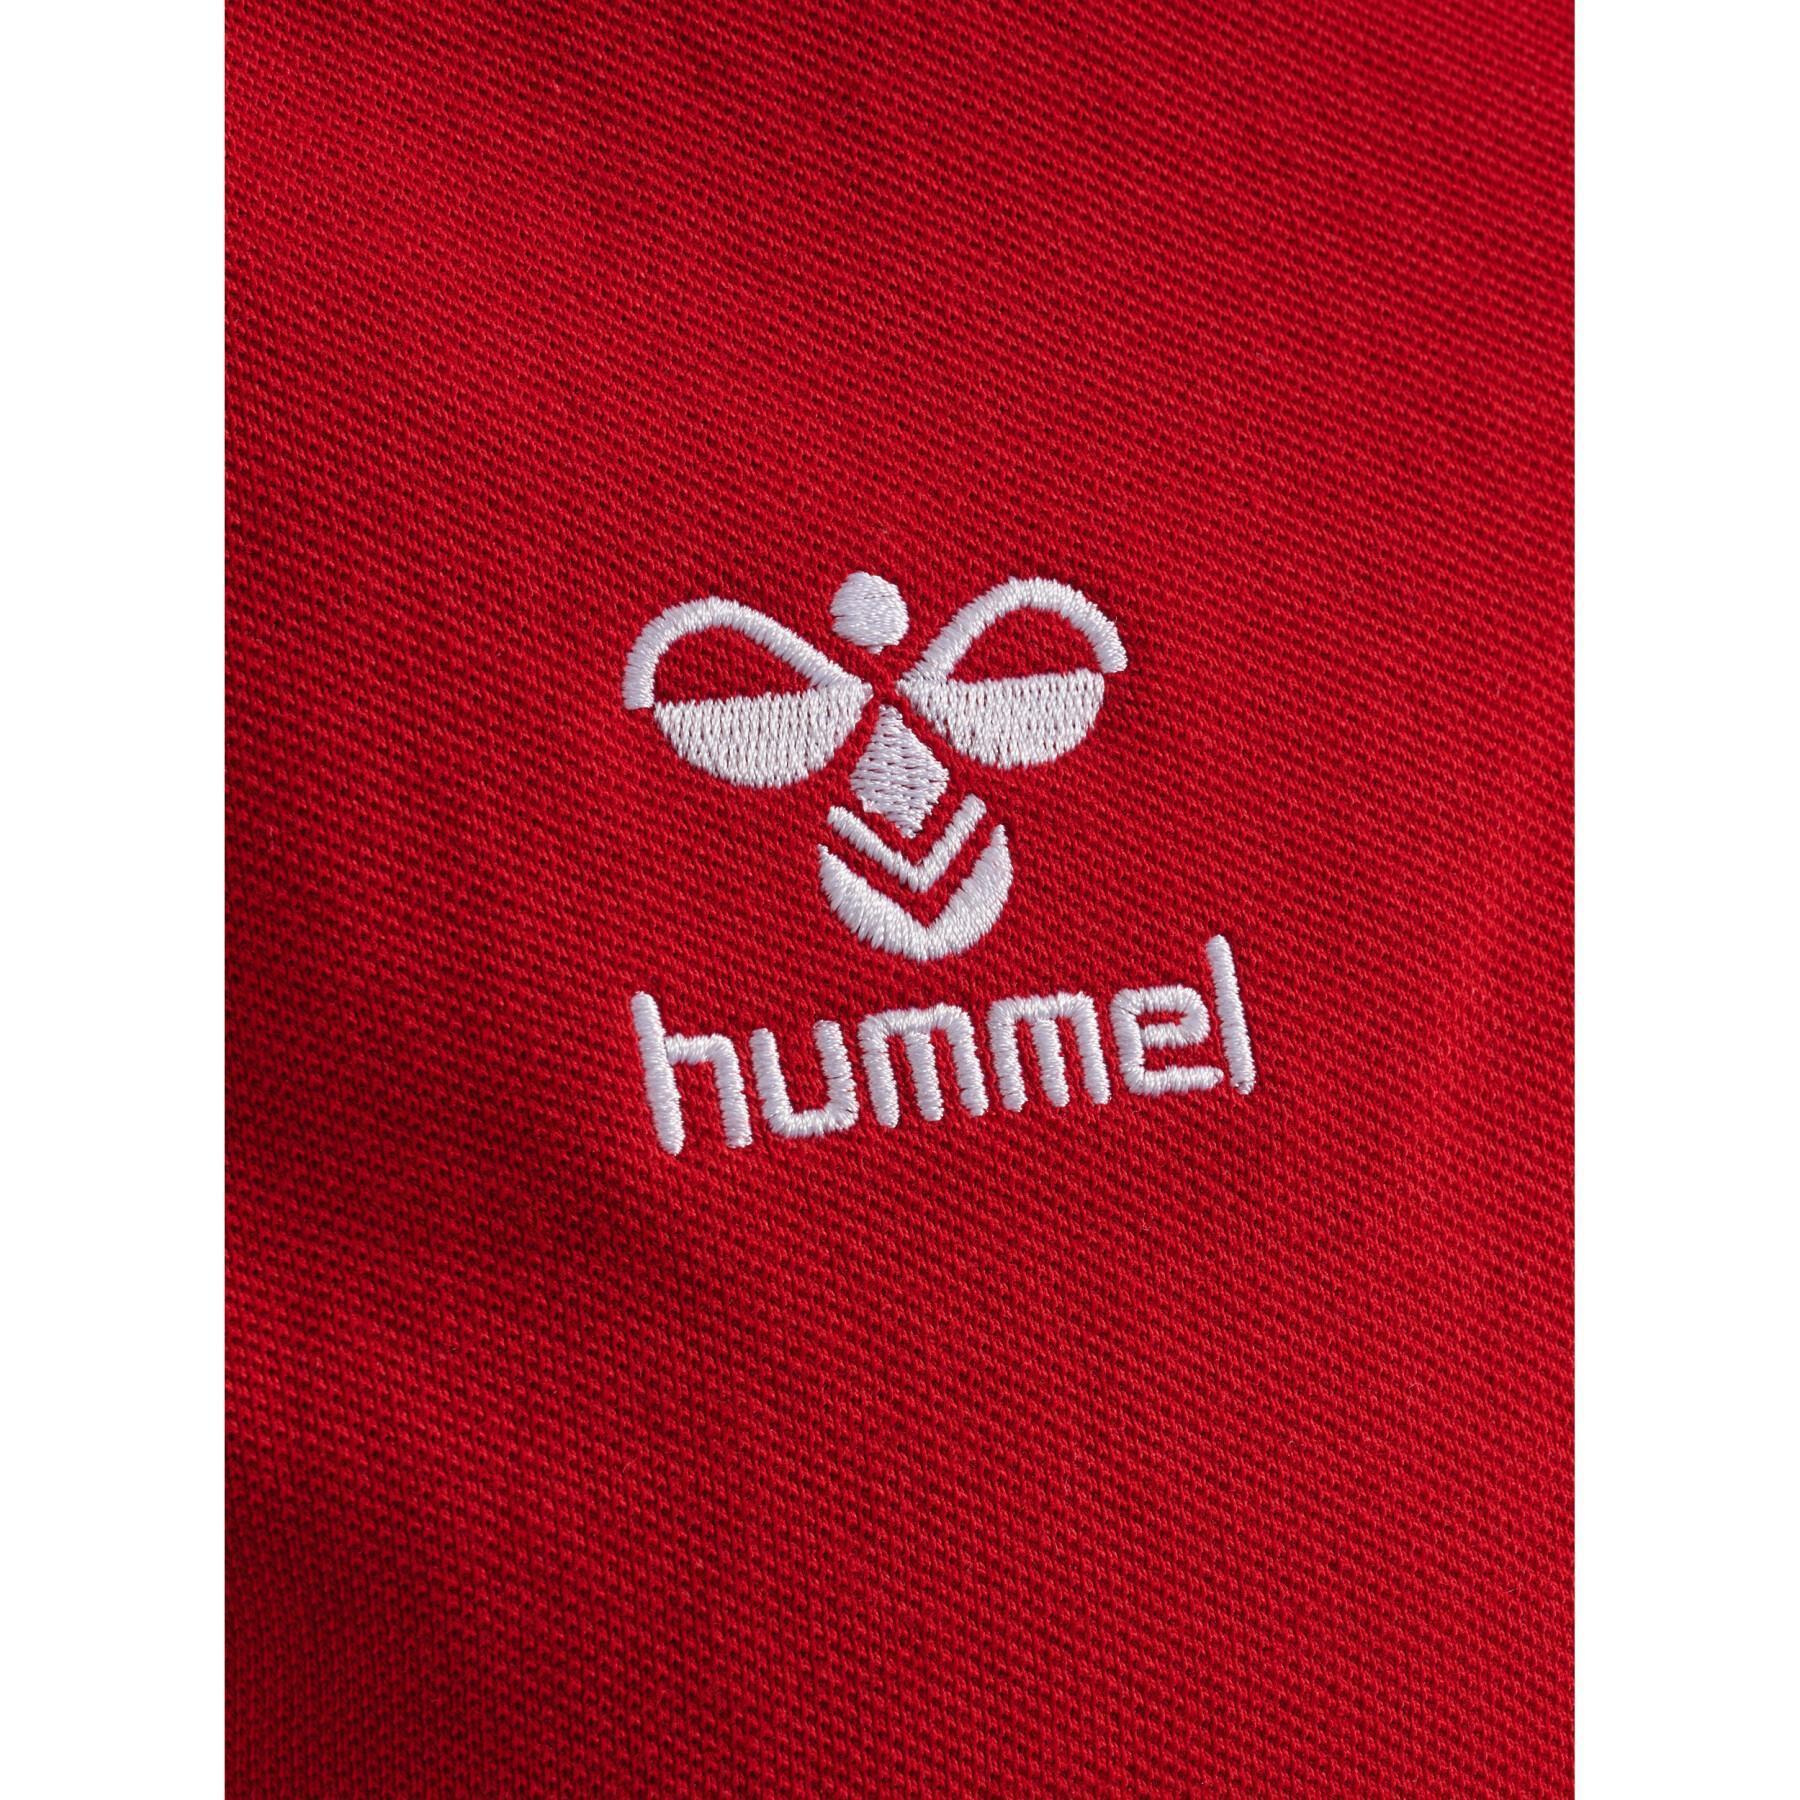 Pólo Hummel Go 2.0